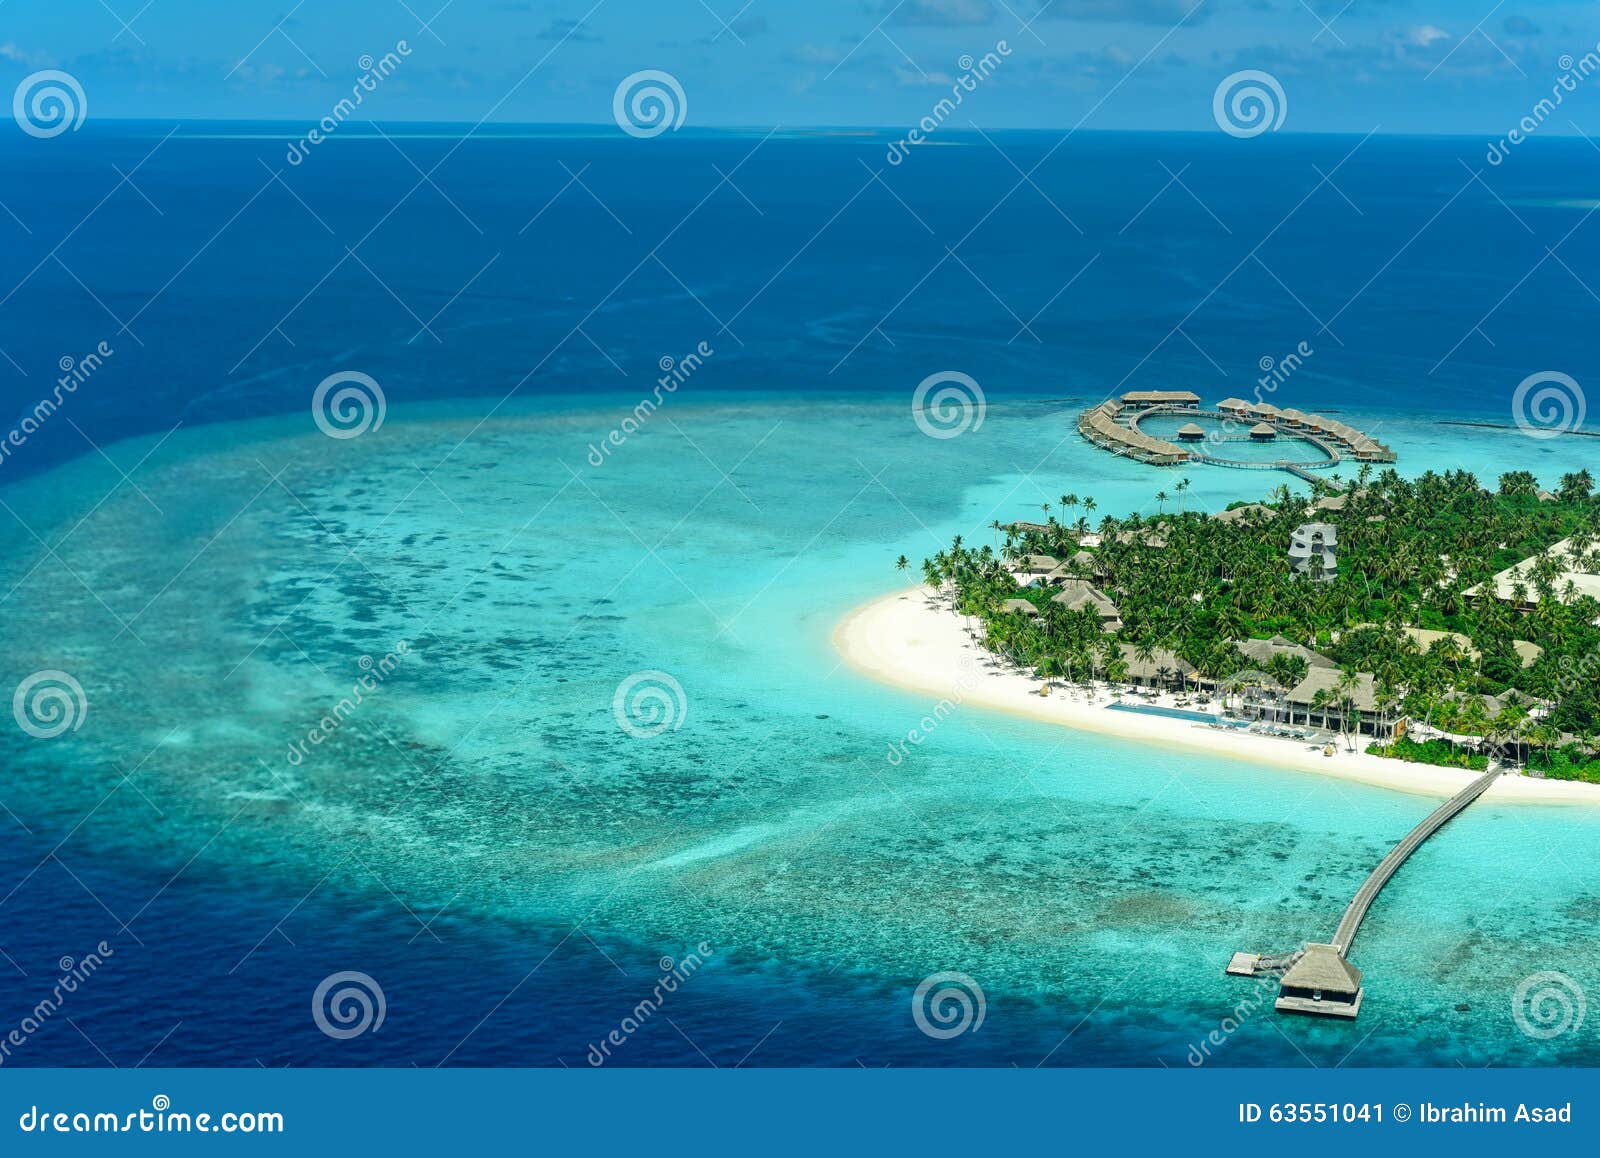 velaa private island noonu atoll